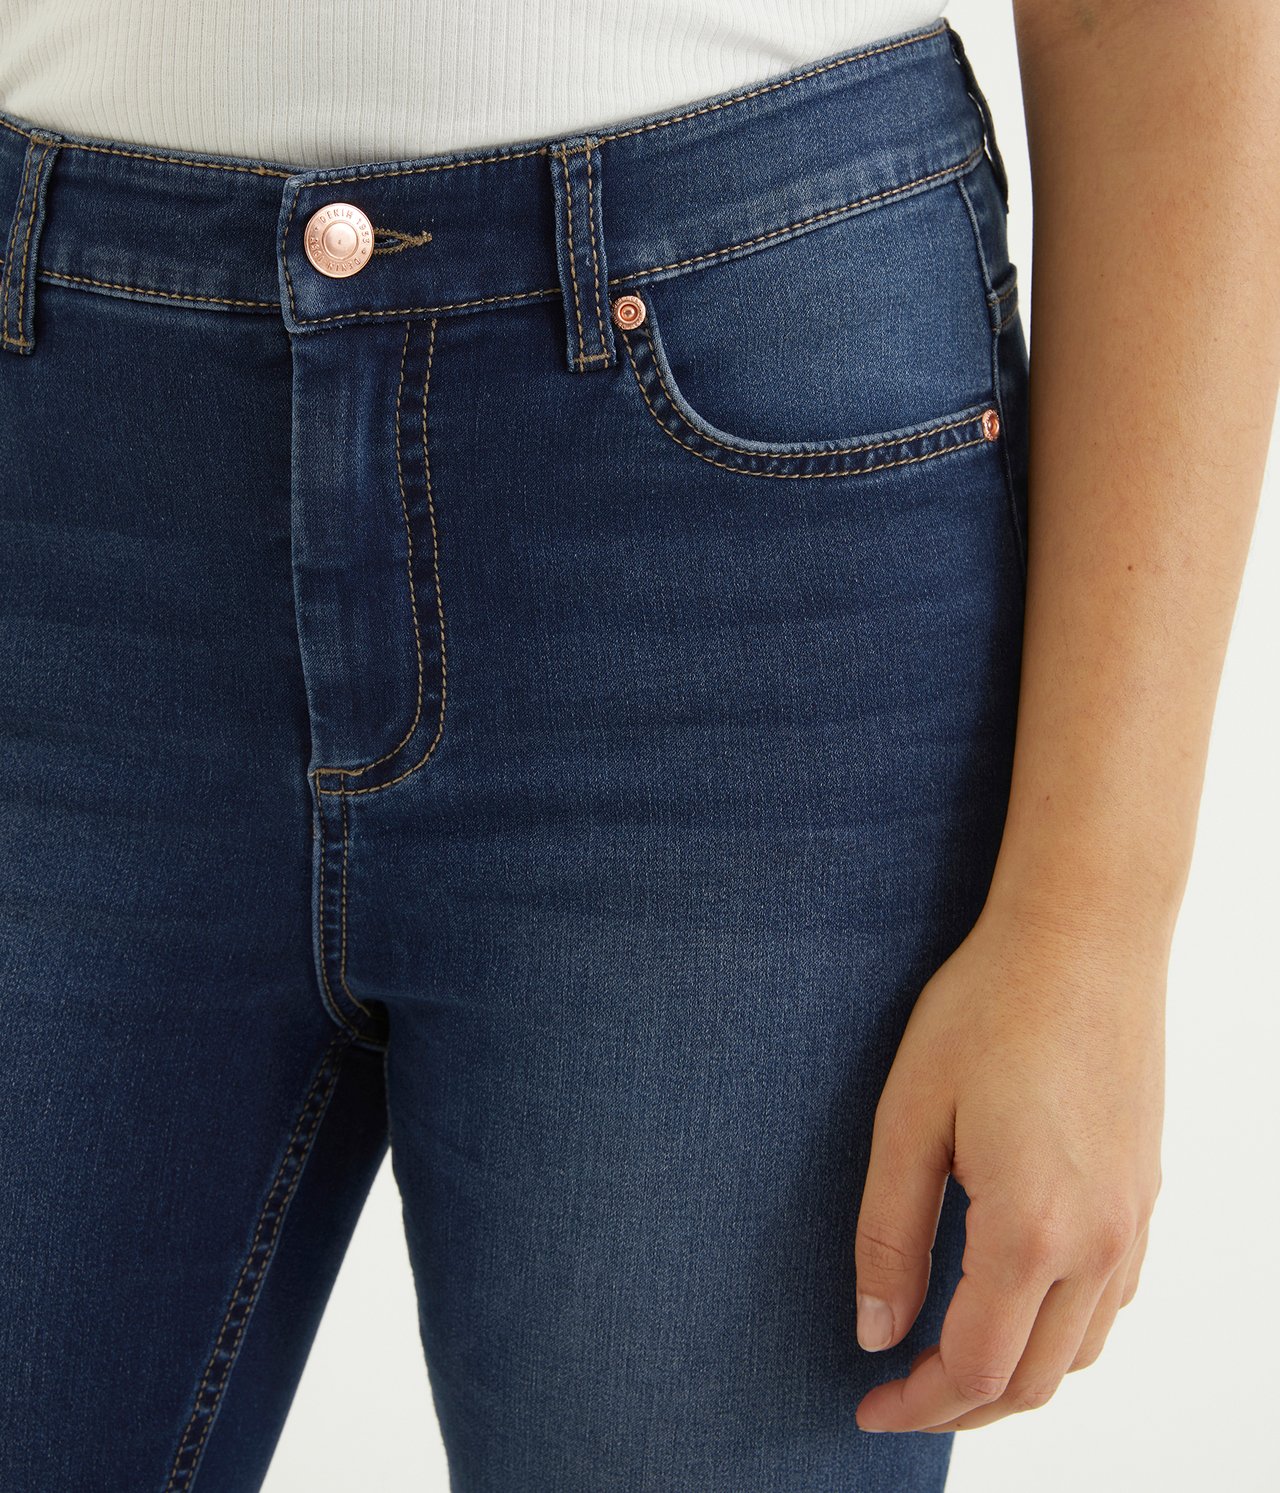 Super slim jeans short leg Tumma denimi - null - 1